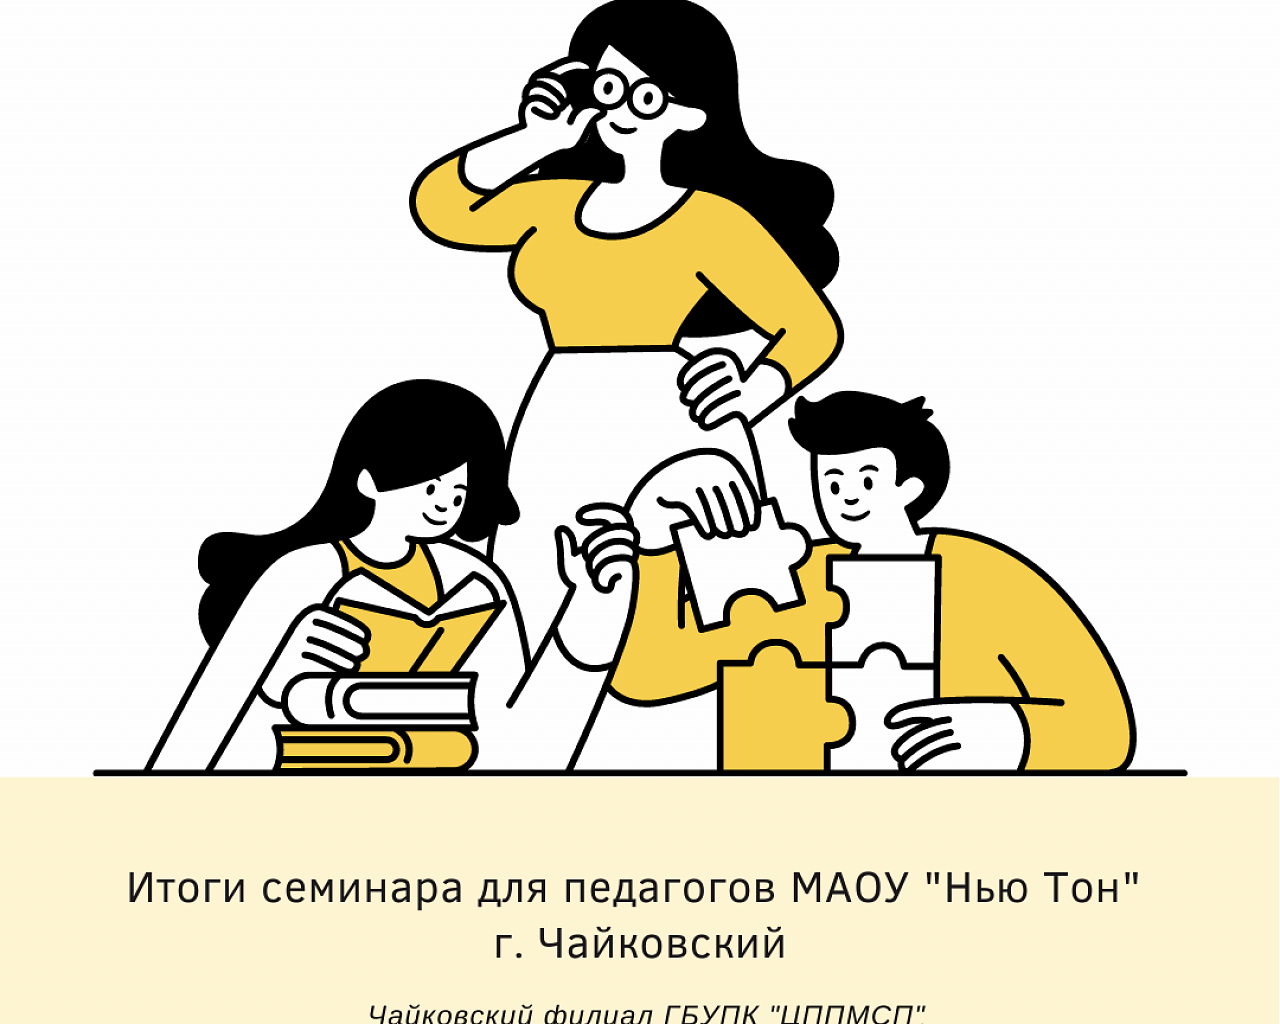 Итоги семинара для педагогов МАОУ "Нью Тон” г. Чайковский